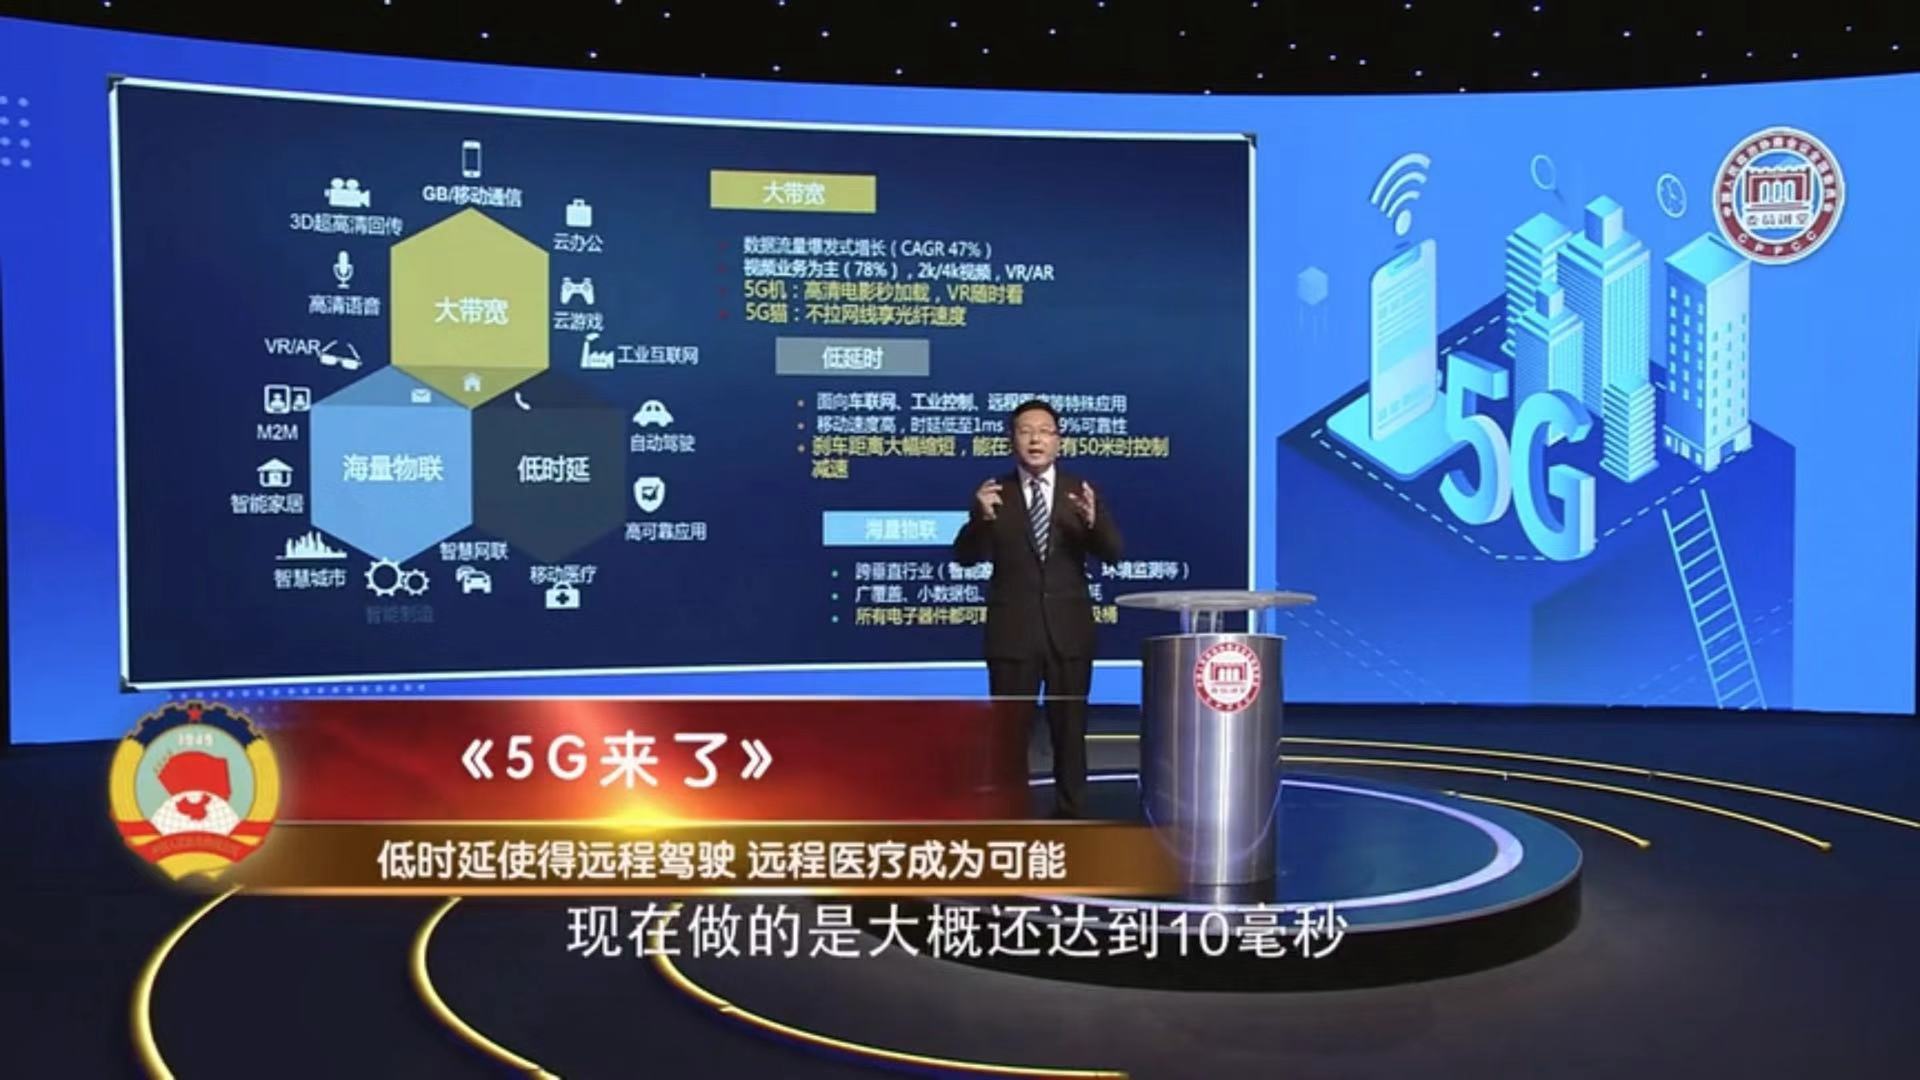 天津联通5G网络崩溃事件引发的网络安全与稳定性关键性思考  第3张